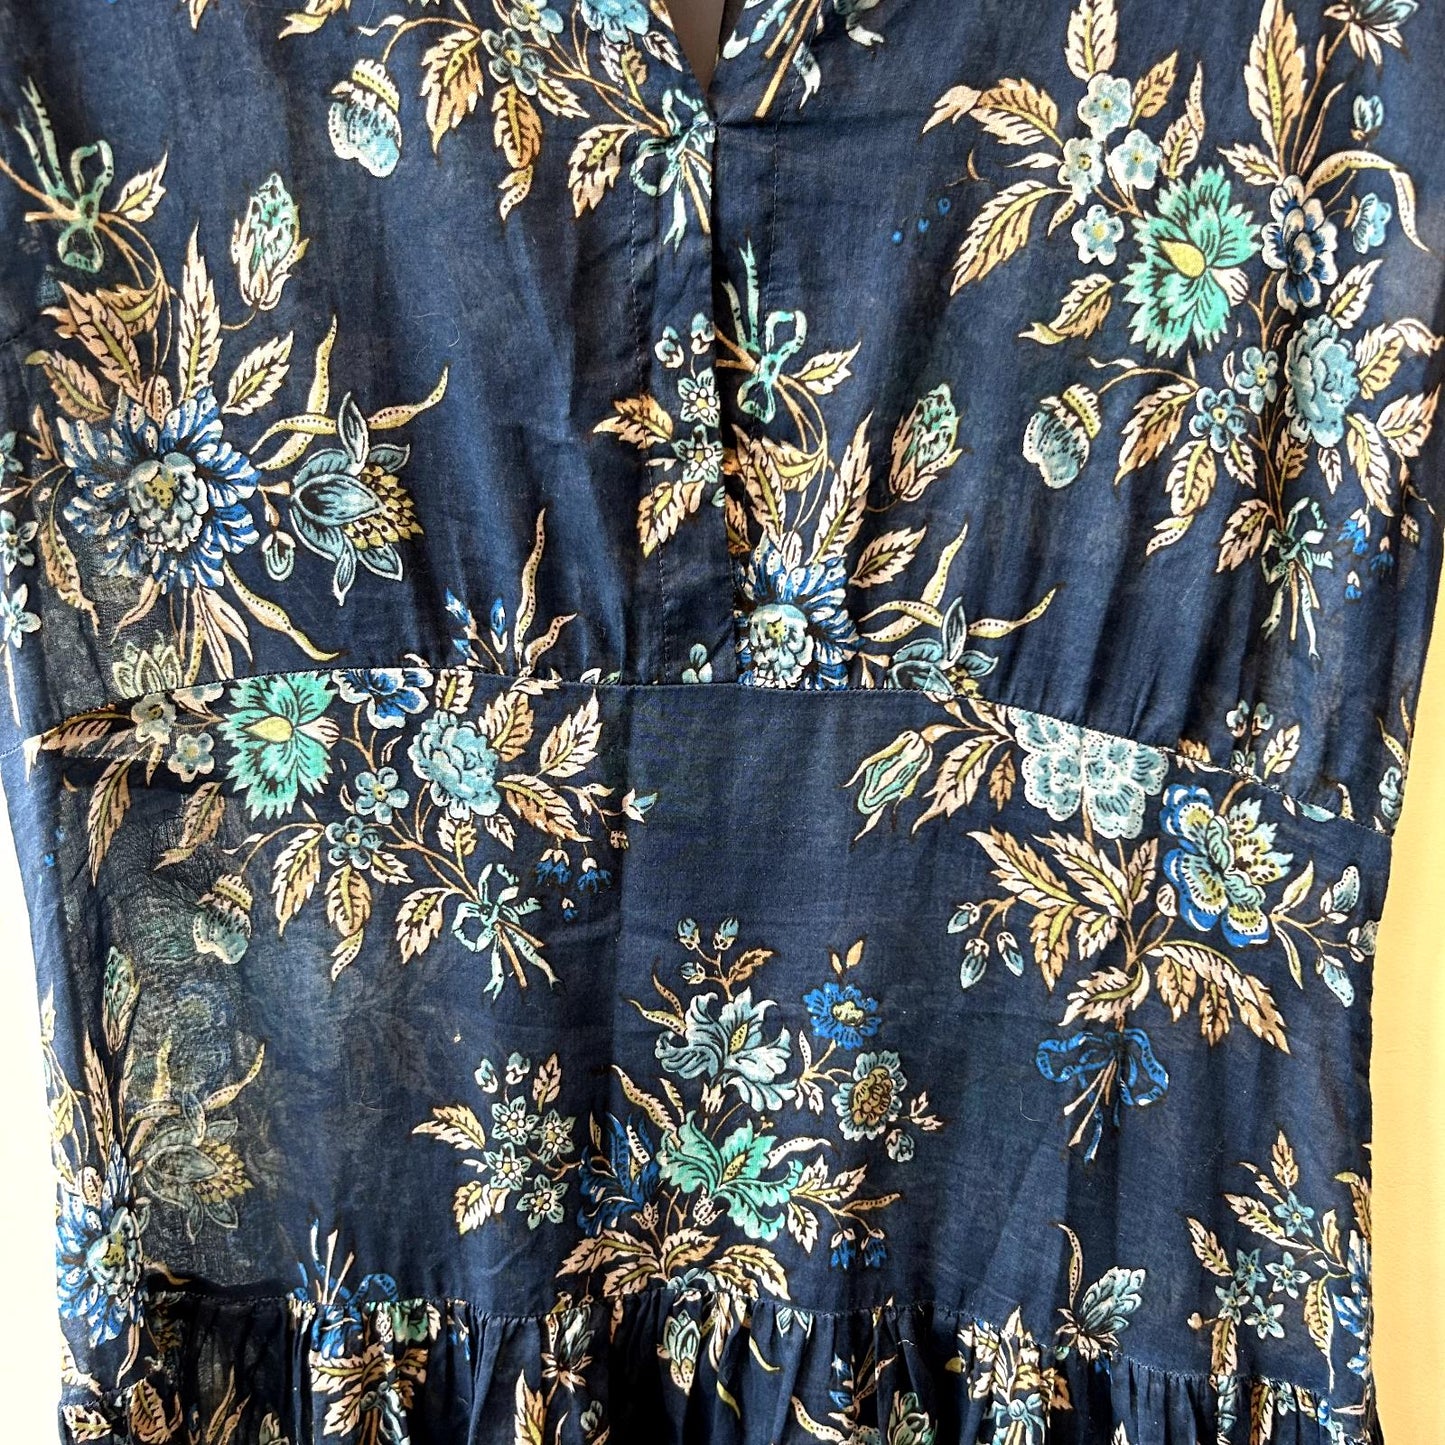 46 IT / L - TwinSet Simona Barbieri Blue Floral Print Maxi Dress 1202NB